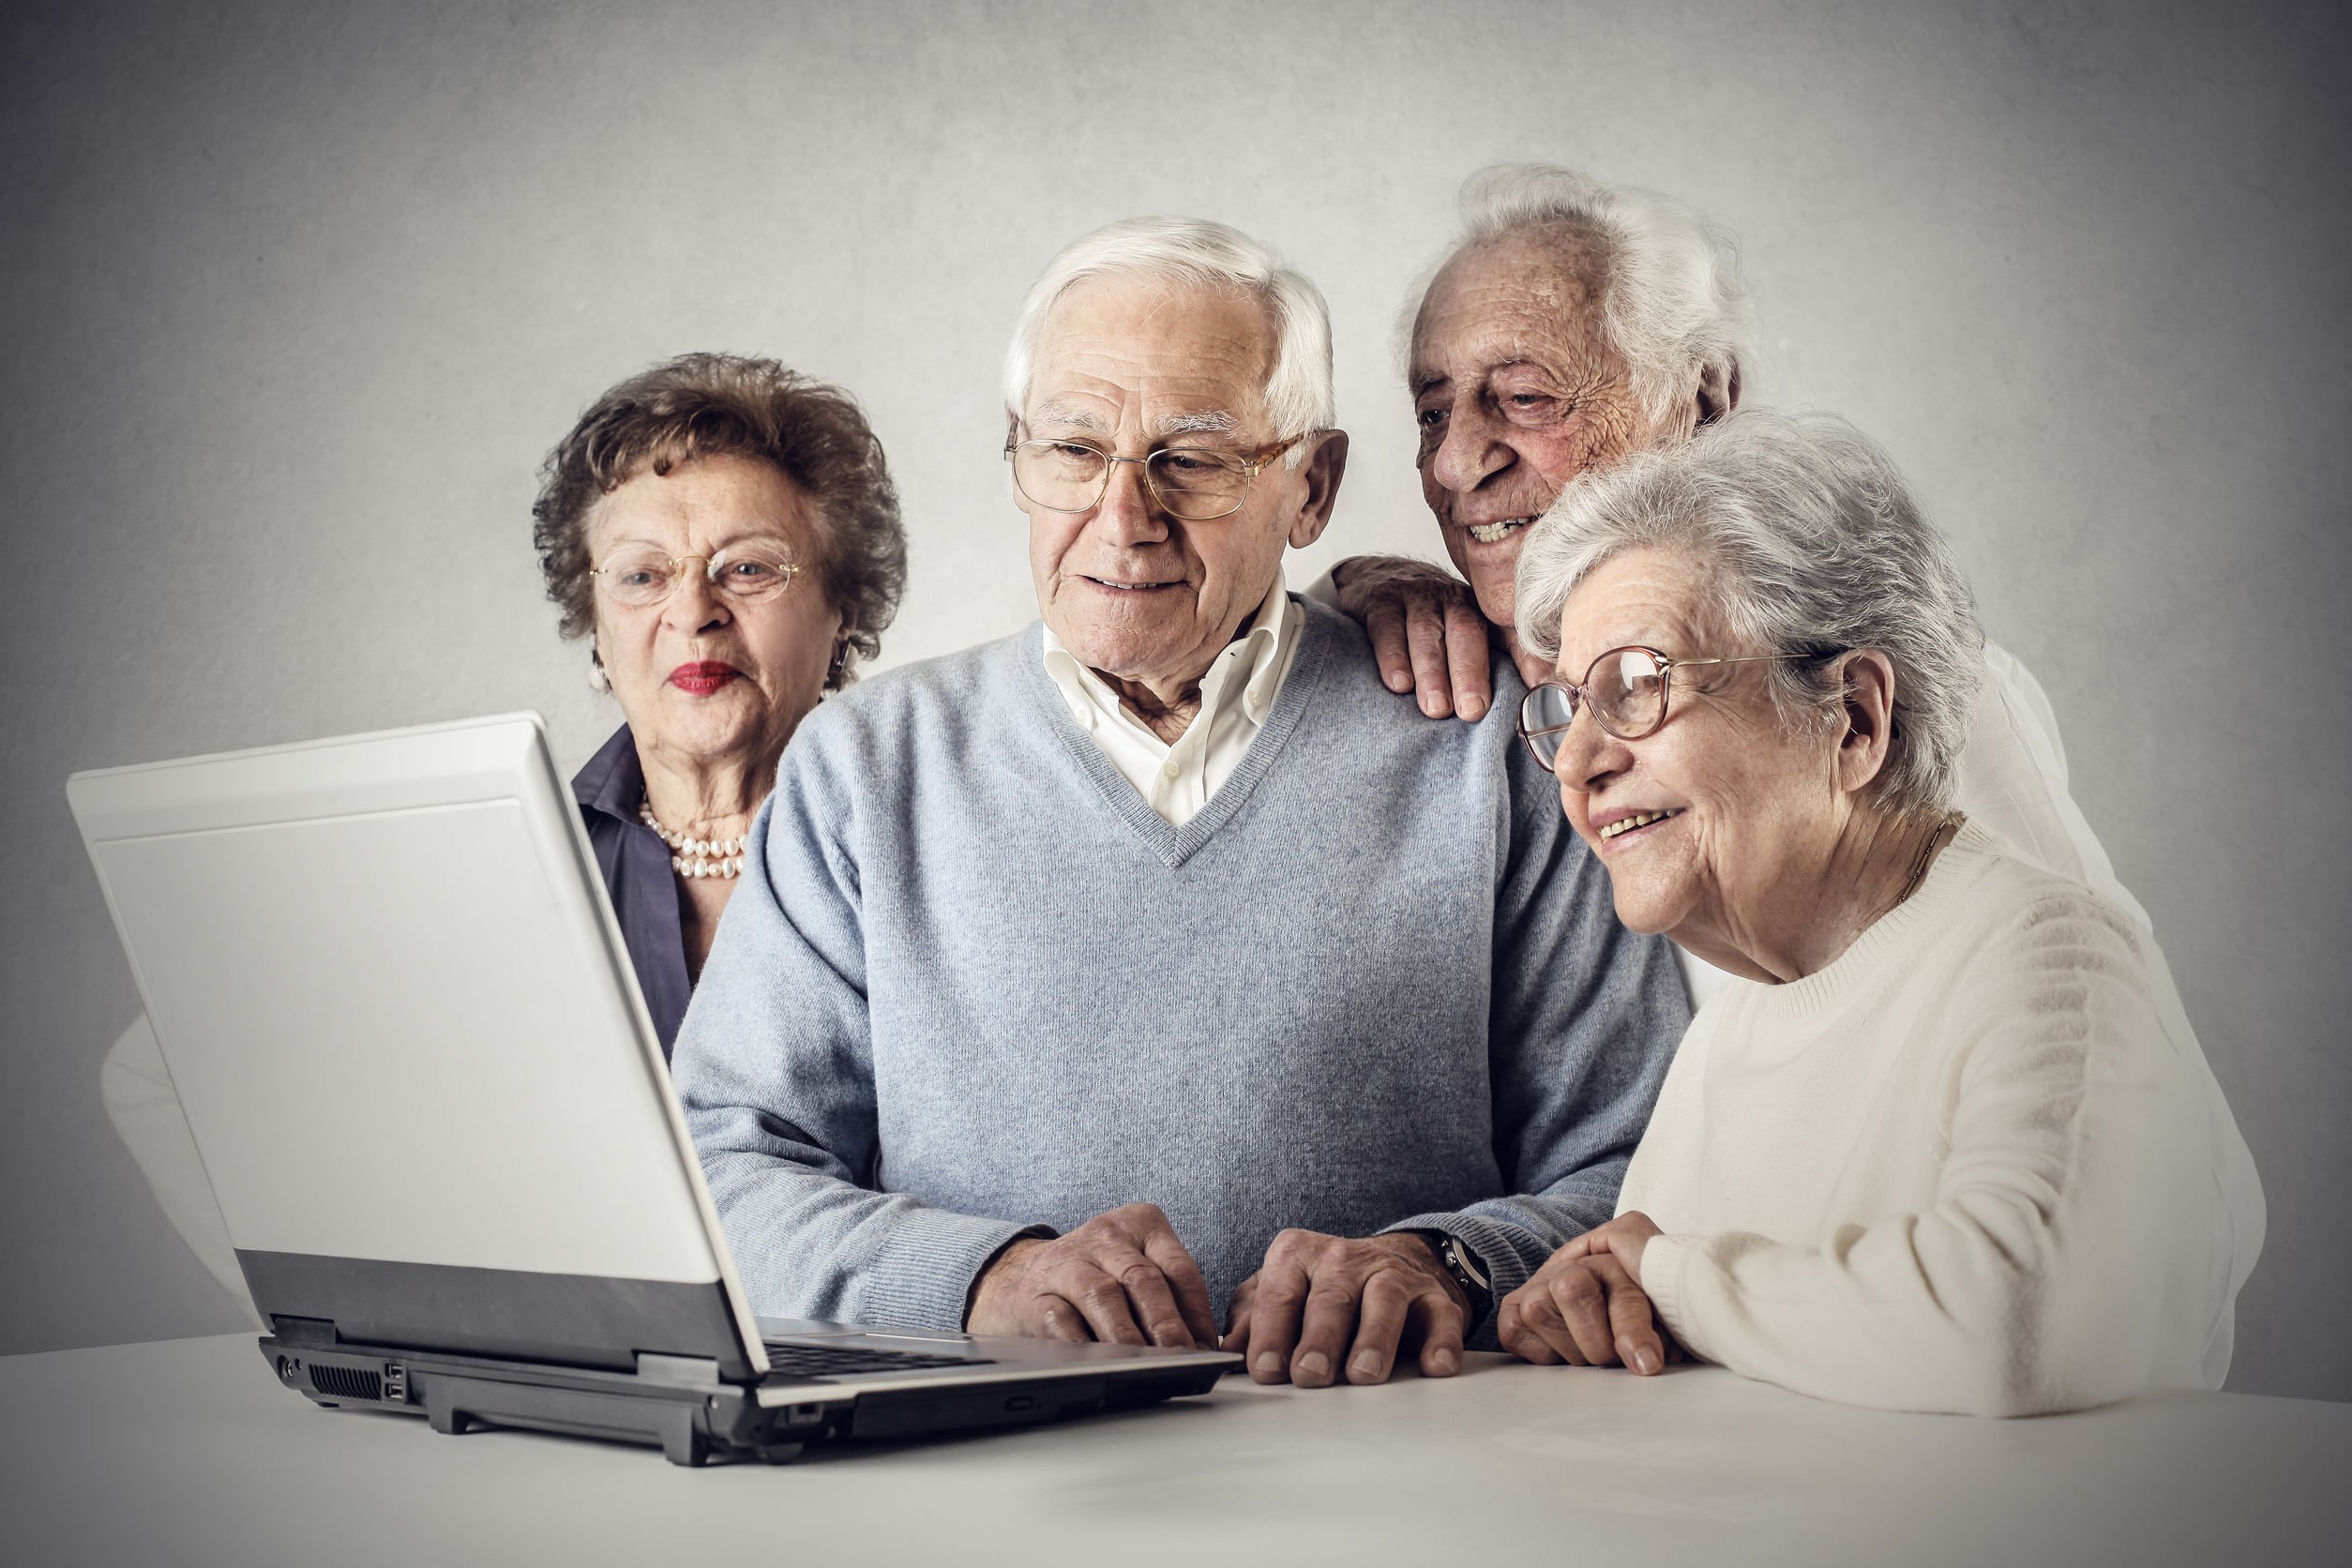 Название старых людей. Пенсионеры и компьютер. Пожилые люди и интернет. Бабушка и компьютер. Компьютерная грамотность для пенсионеров.